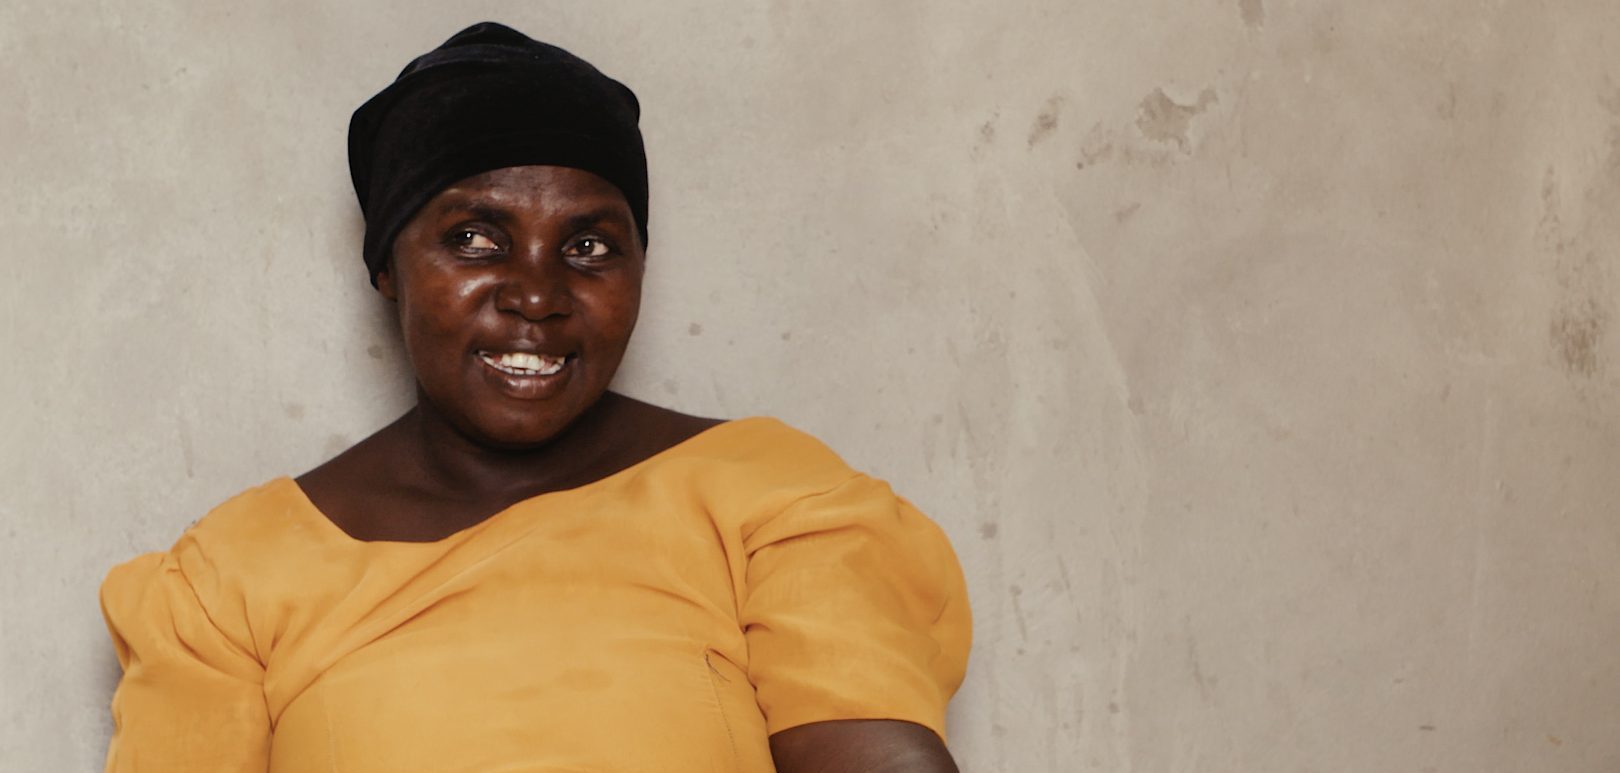 Bedstemor fra Chanika Tanzania: For fire år siden var Fatuma Nungwe syg og havde svært ved forsørge sine fire børnebørn, som hun var alene om at tage sig af. SOS Børnebyerne hjalp hende med behandling og gav hende økonomisk hjælp til at starte sin egen forretning. Fire år senere er hun en succesfuld, selvstændig forretningskvinde og klar til at sige farvel og tak for hjælpen.